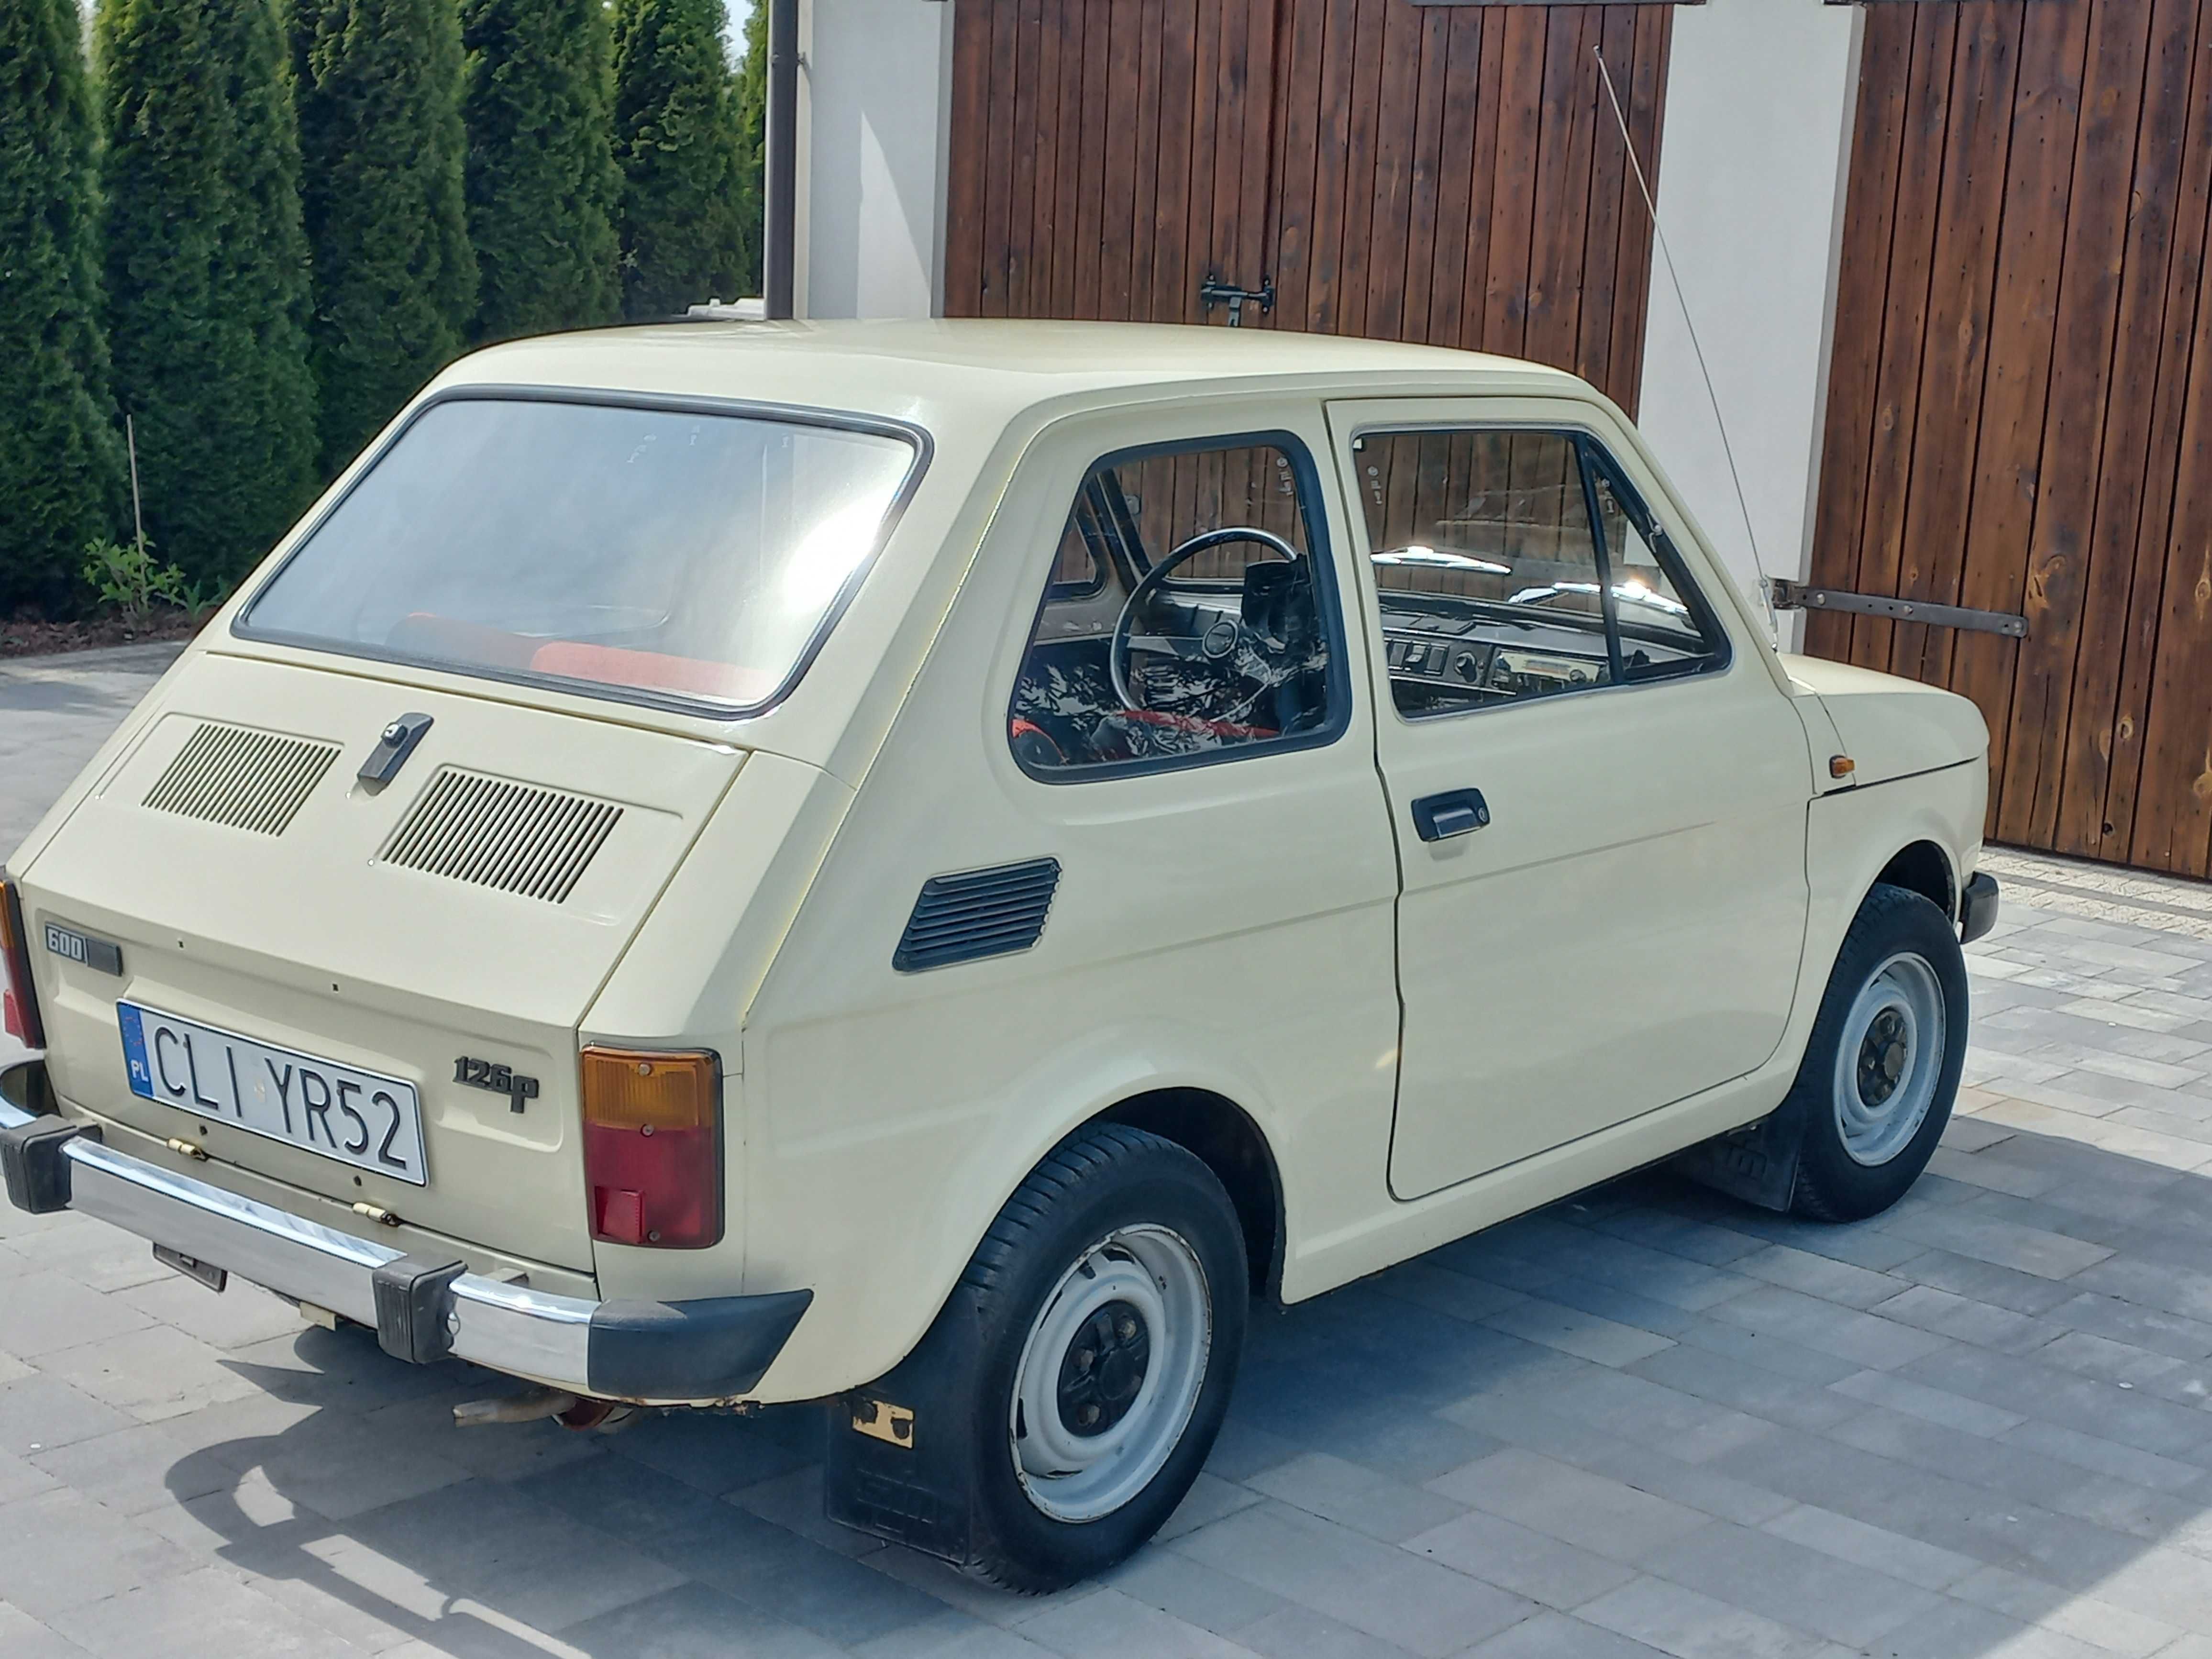 Fiat 126p 1983 rok silnik 600 oryginał lakier 100%